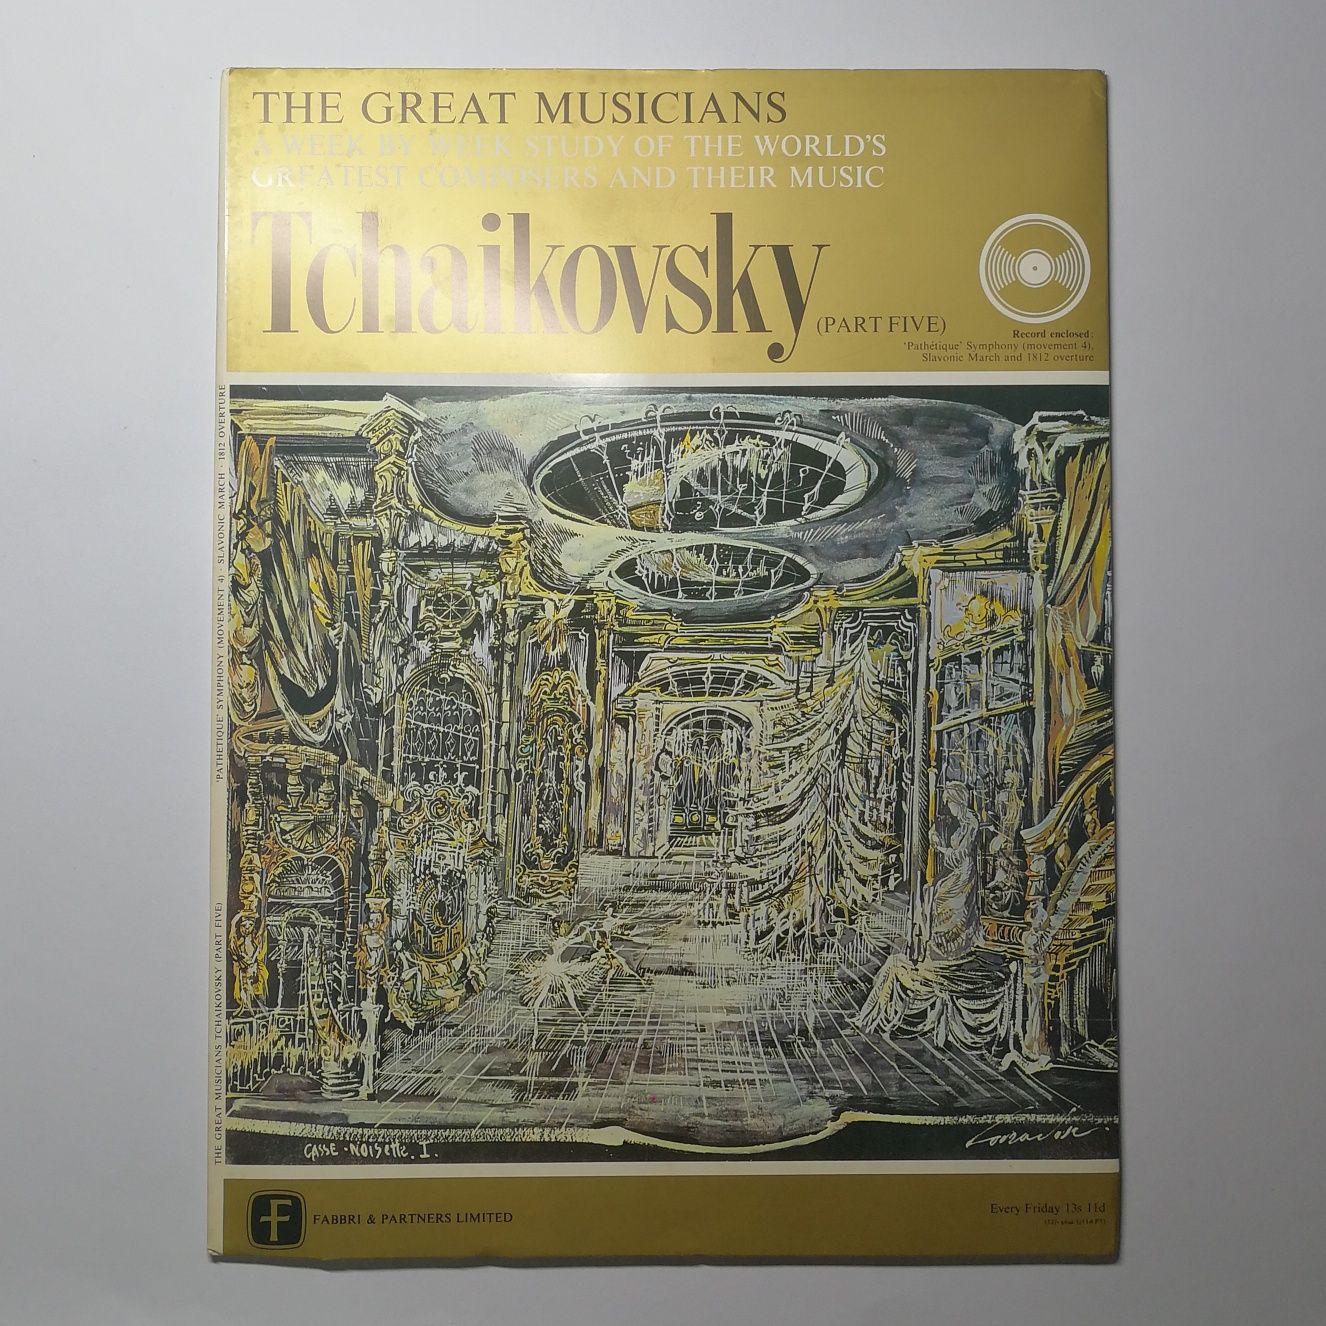 Discos de Vinil | The Great Musicians - Tchaikovsky (pt. 1 - 5)